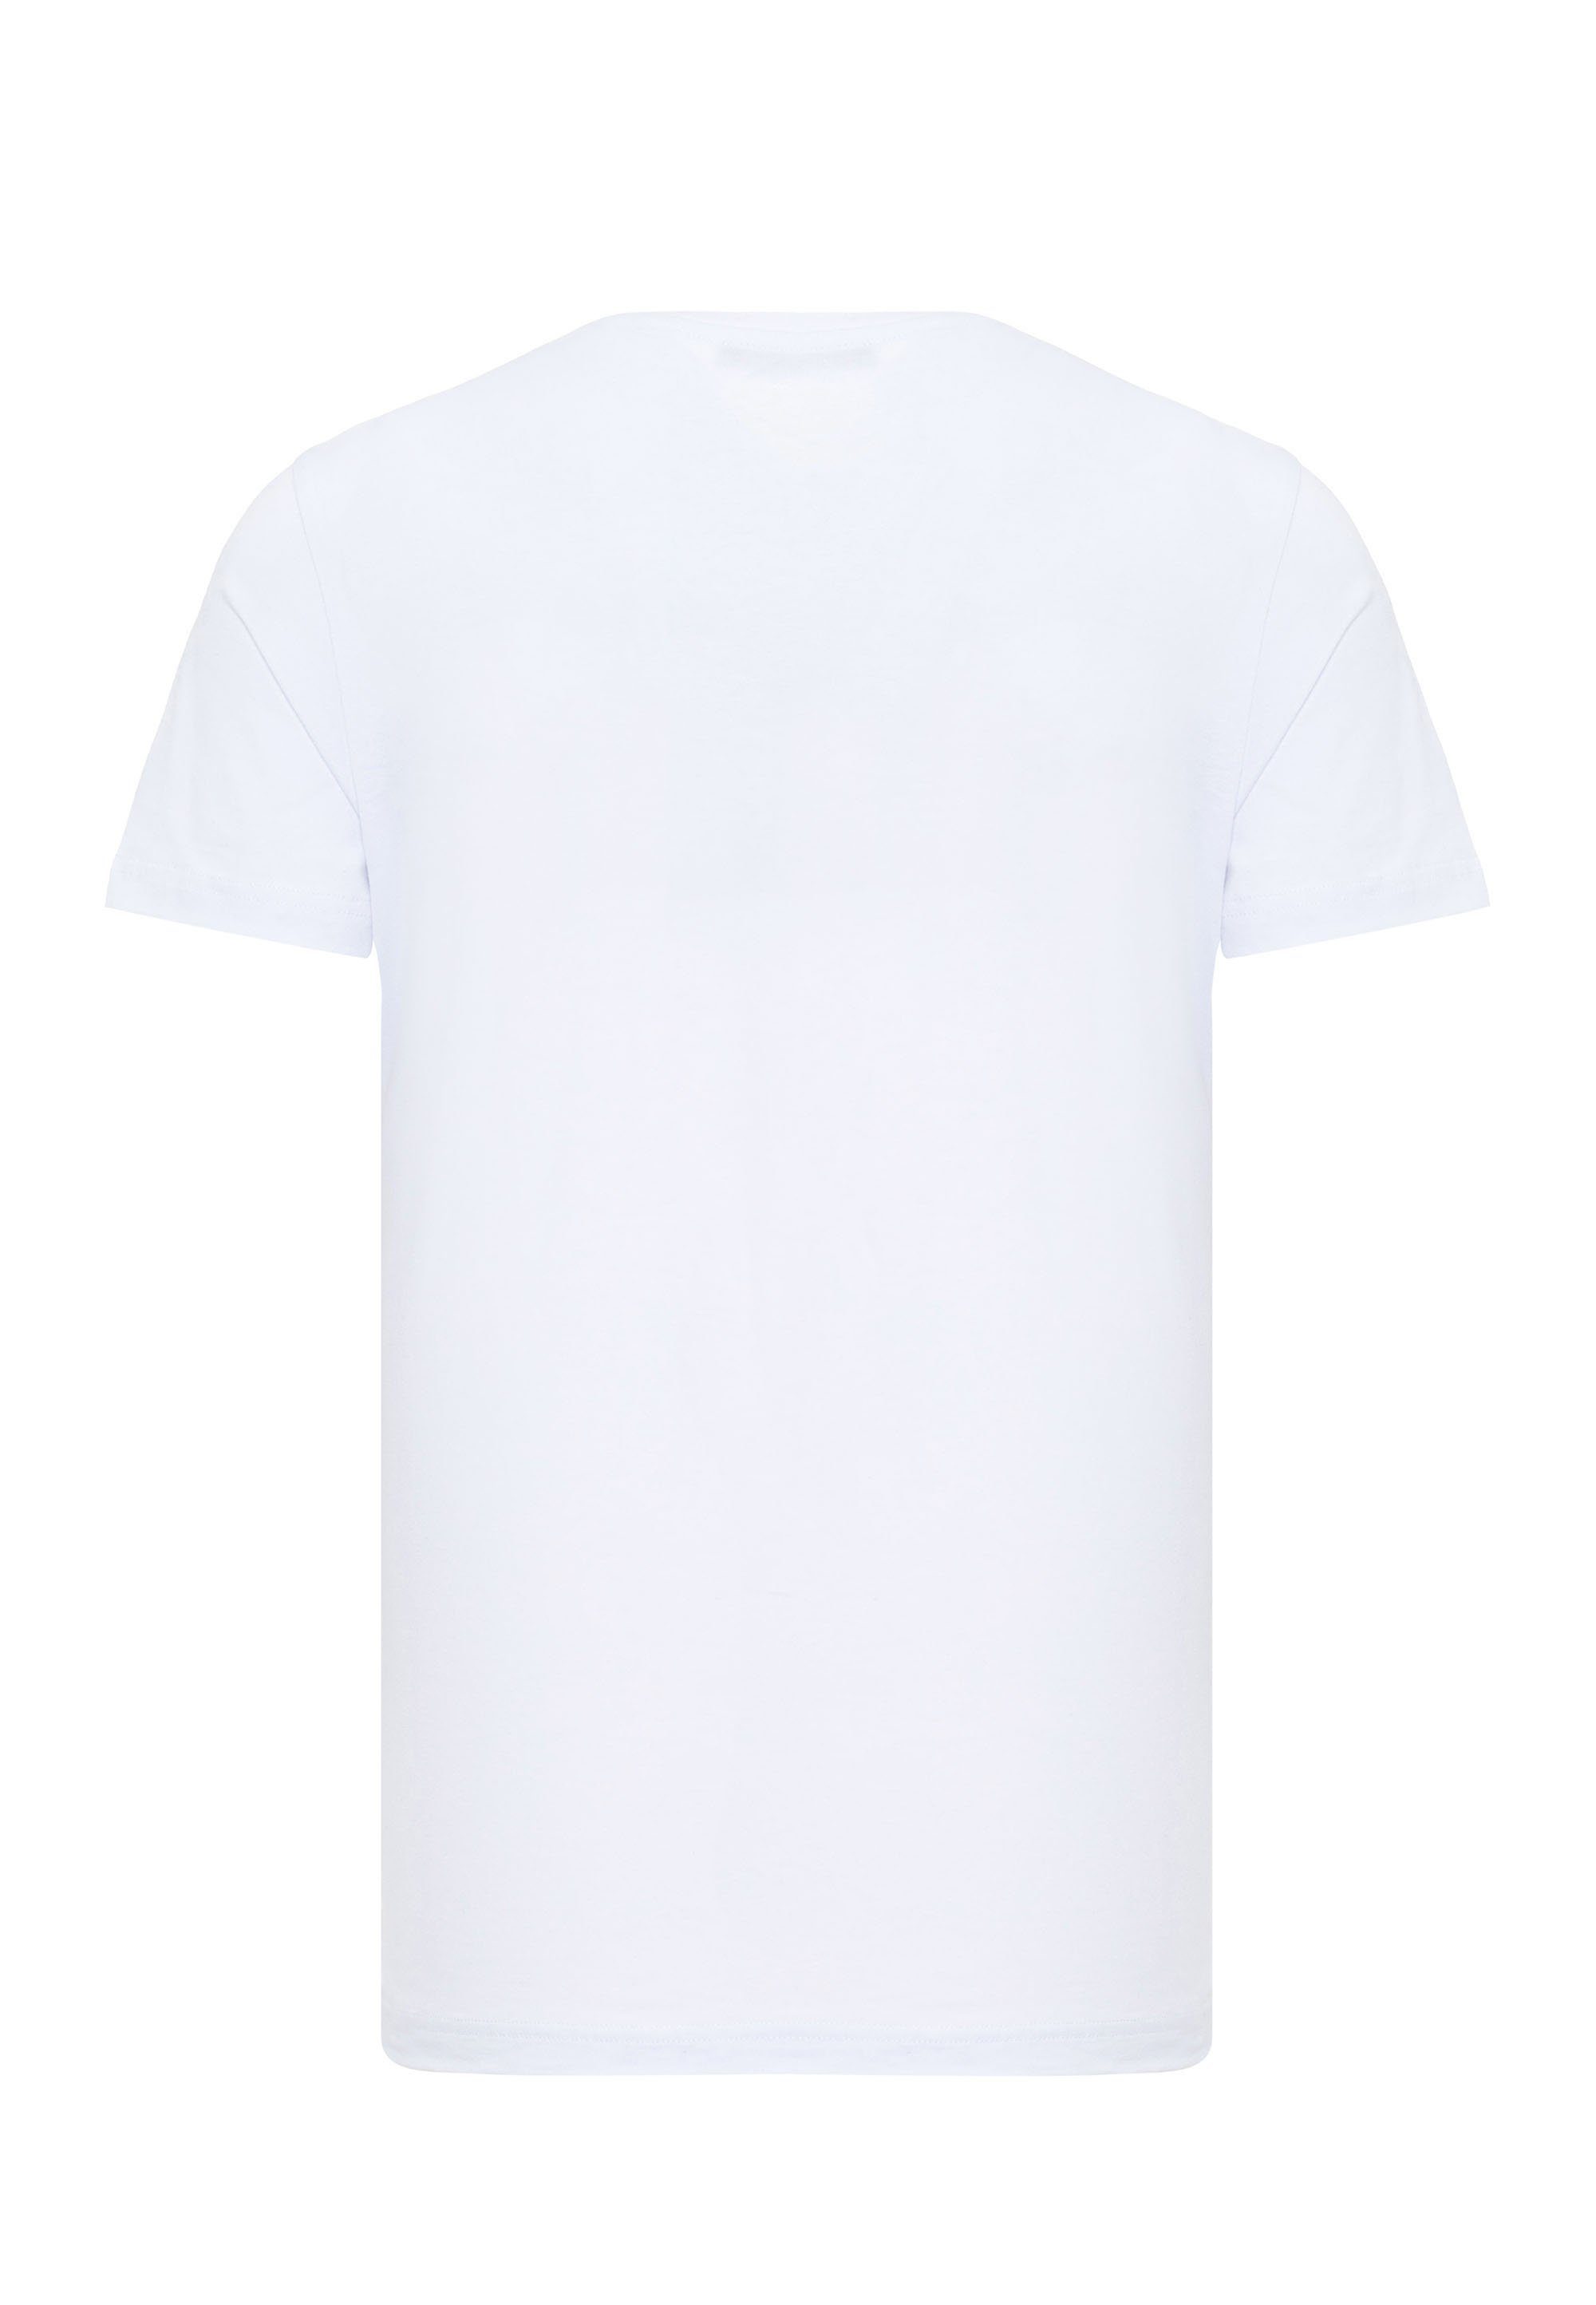 Cipo & Baxx T-Shirt mit Frontprint coolem weiß